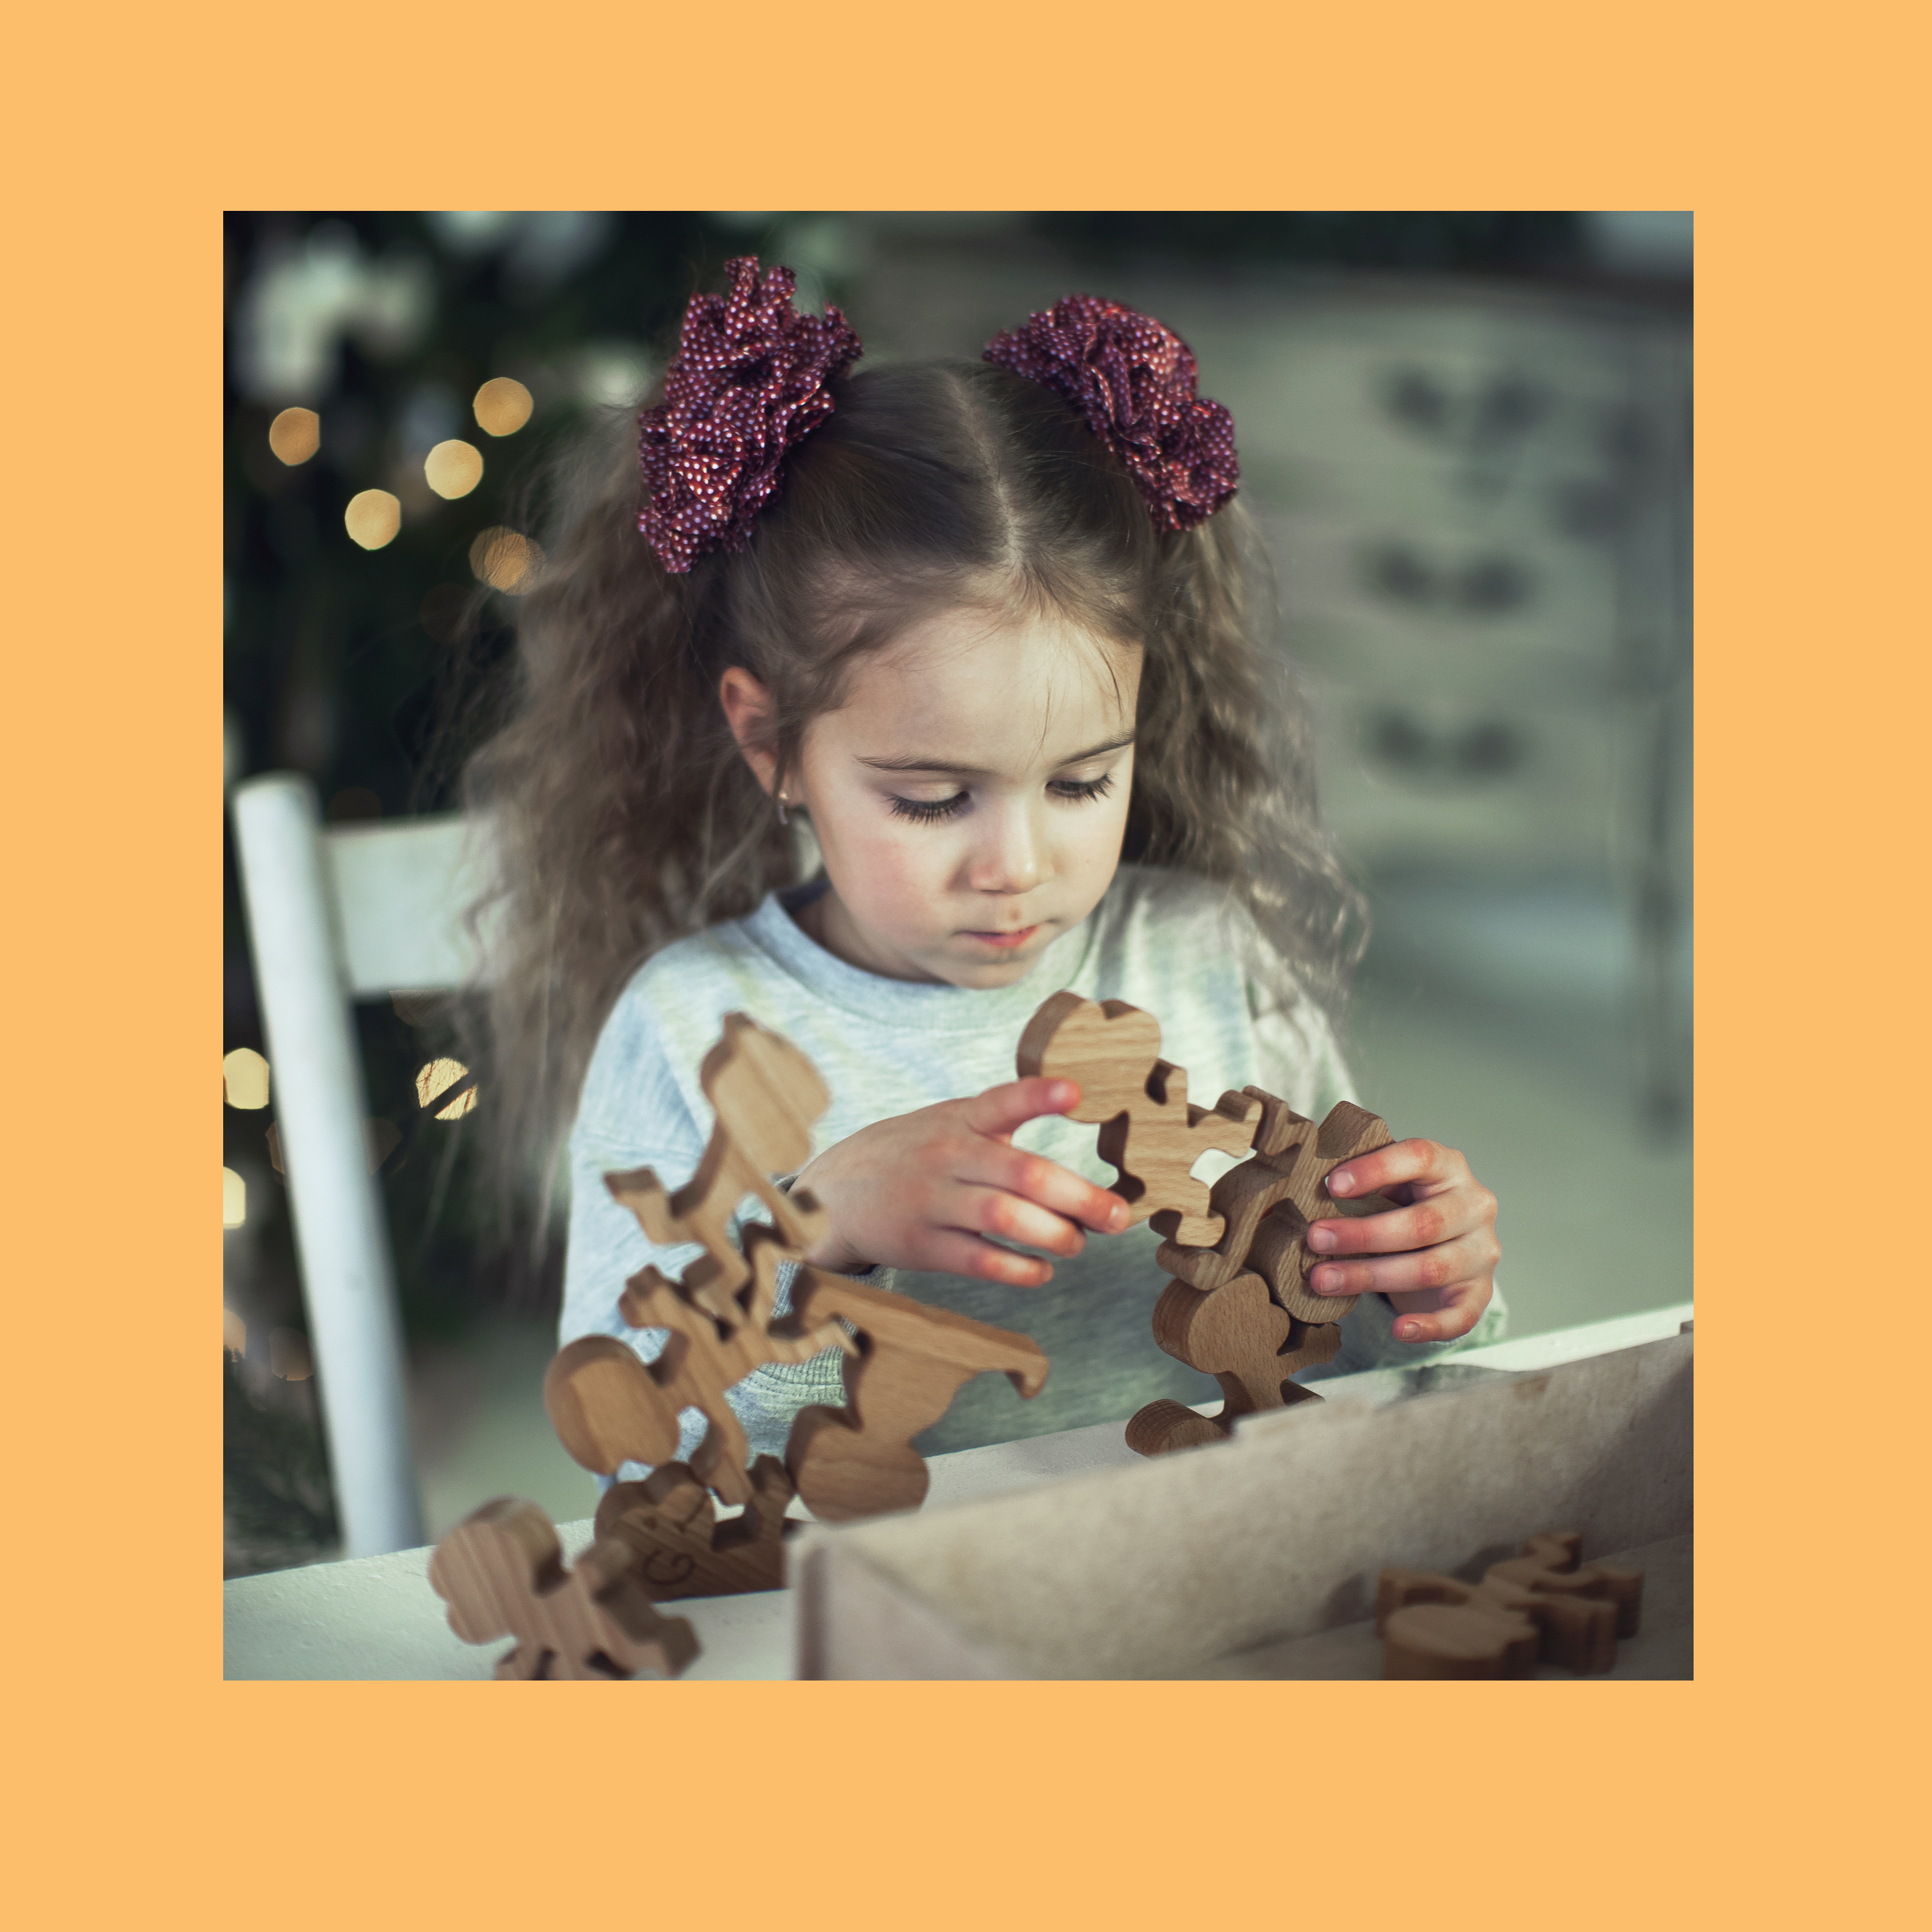 фабрика деревянных игрушек woodypeople - это мир игрушек и в мире детей сделанных из натуральных материалов Мы производим для Вас самые интересные, безопасные и душевные товары, которые уже завладели любовью наших детей.